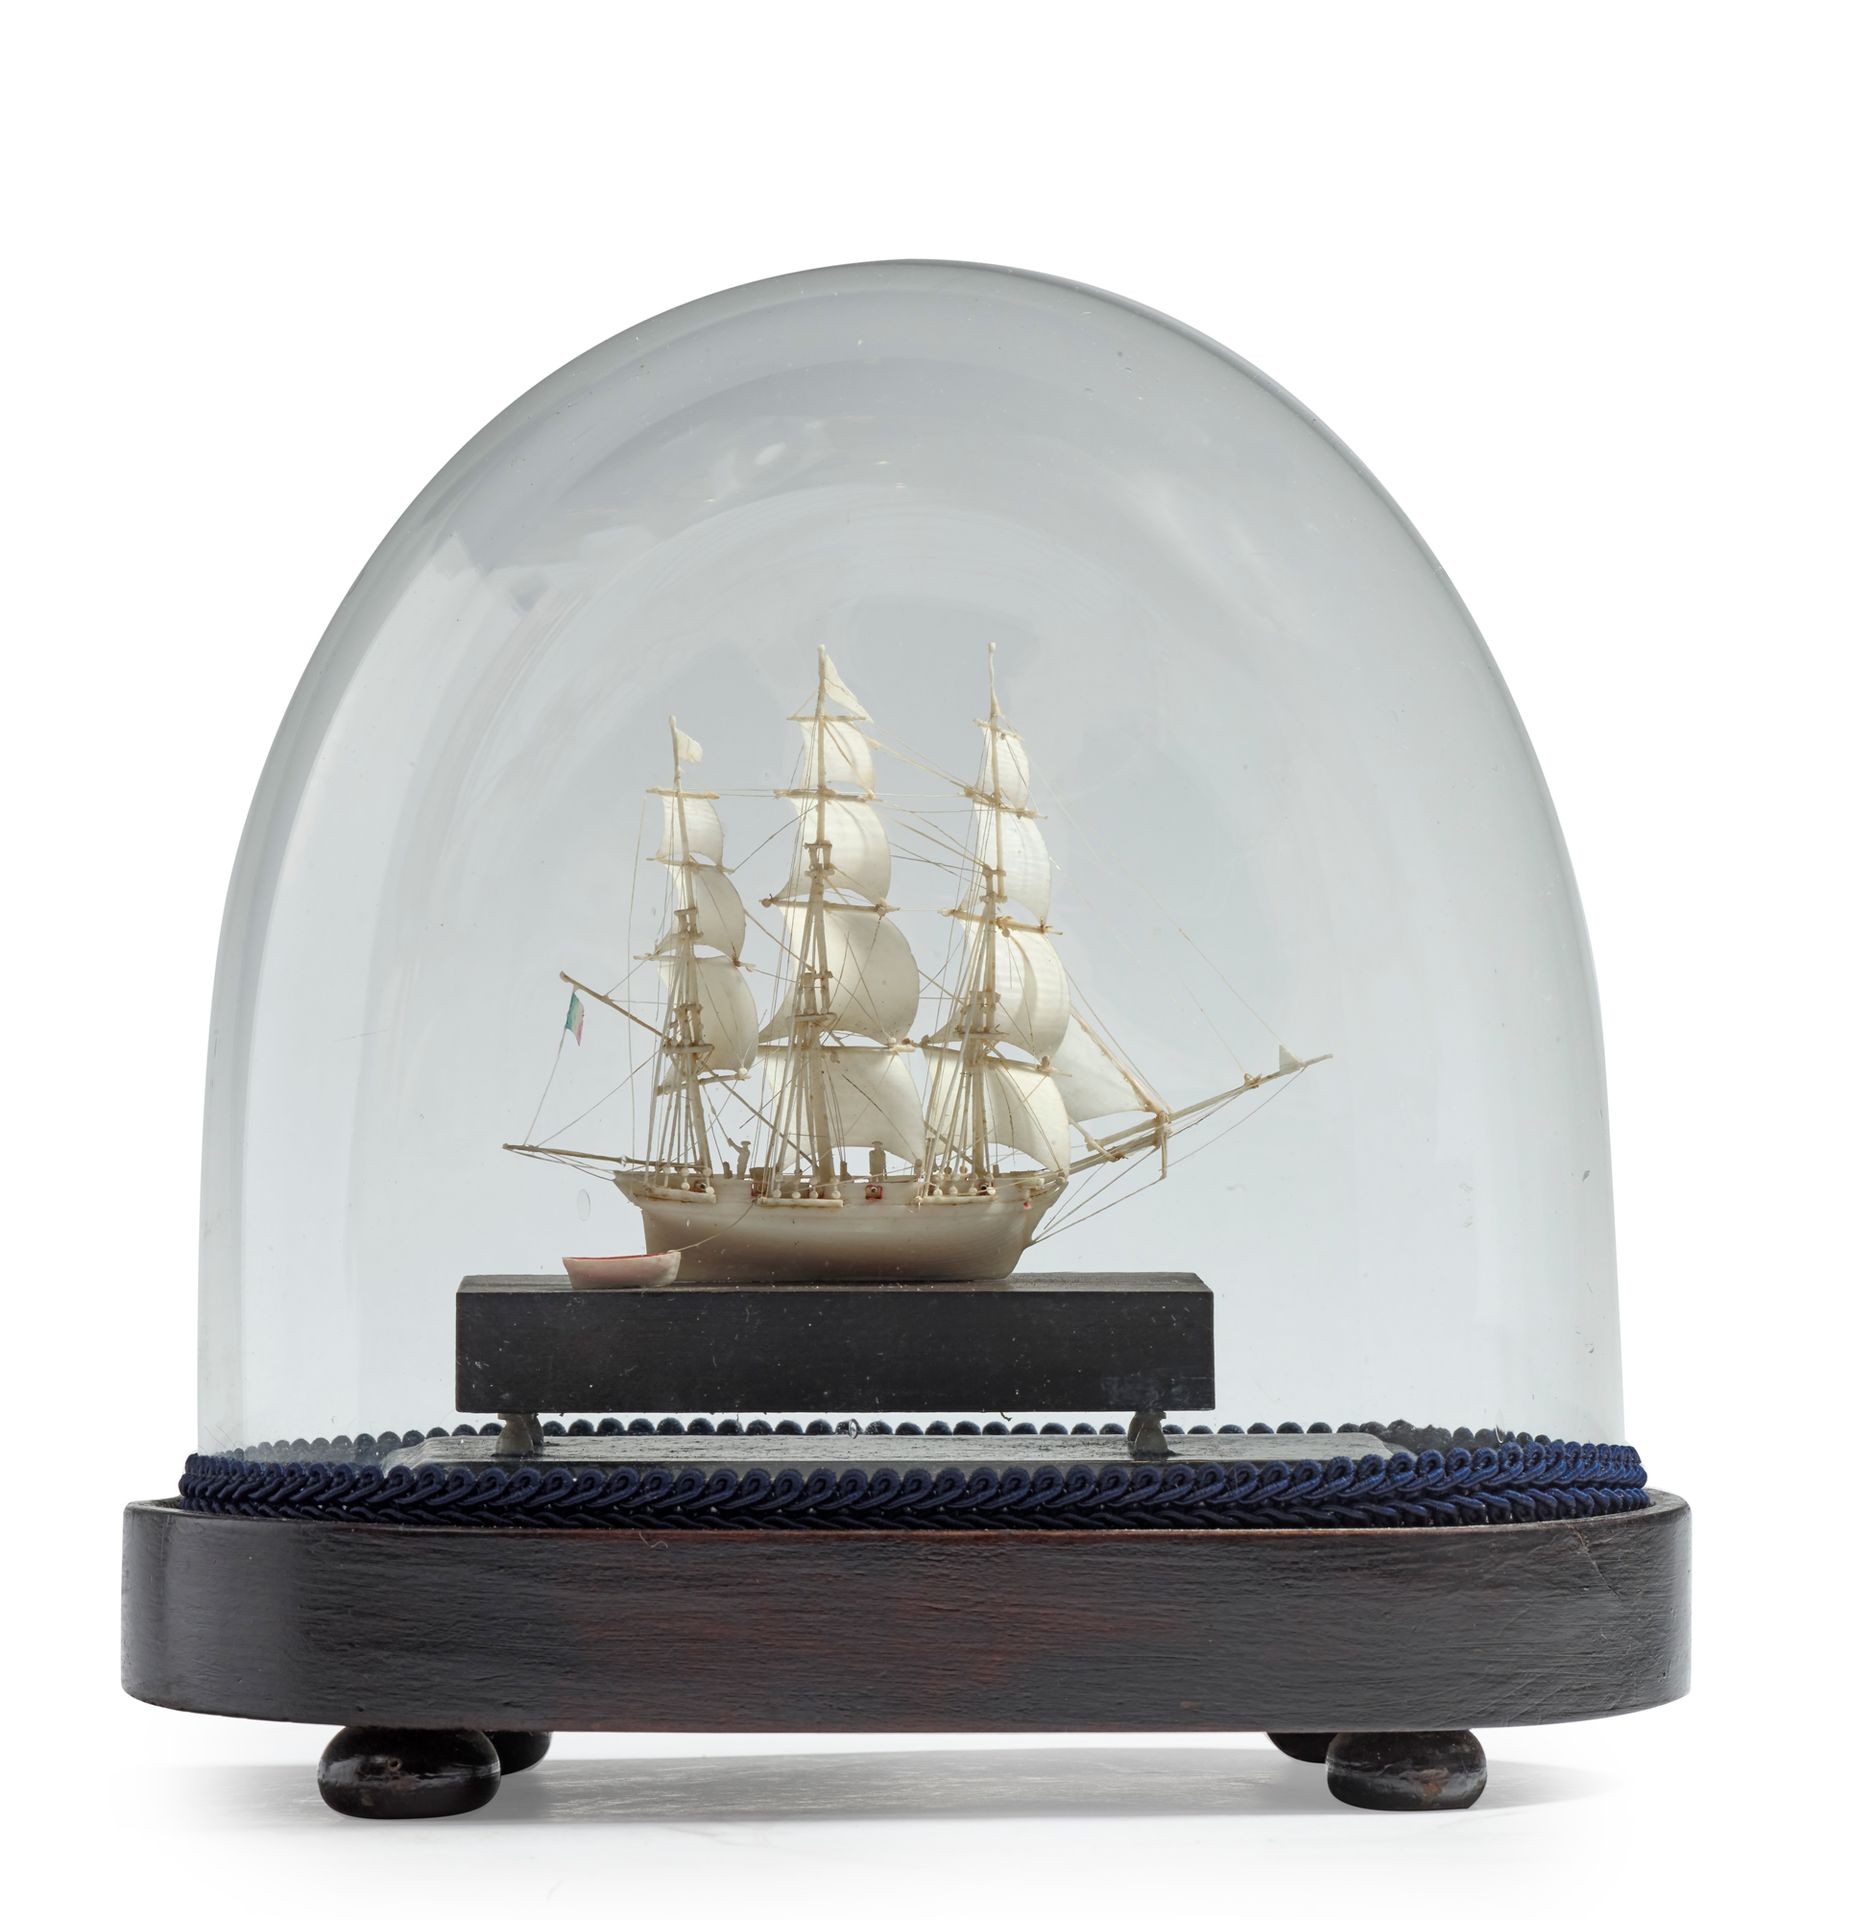 Null * 一艘象牙色的护卫舰模型，甲板上有几个人物的动画，拖着船。
迪耶普后期的作品，19世纪 高25厘米，长23厘米（地球仪的尺寸）